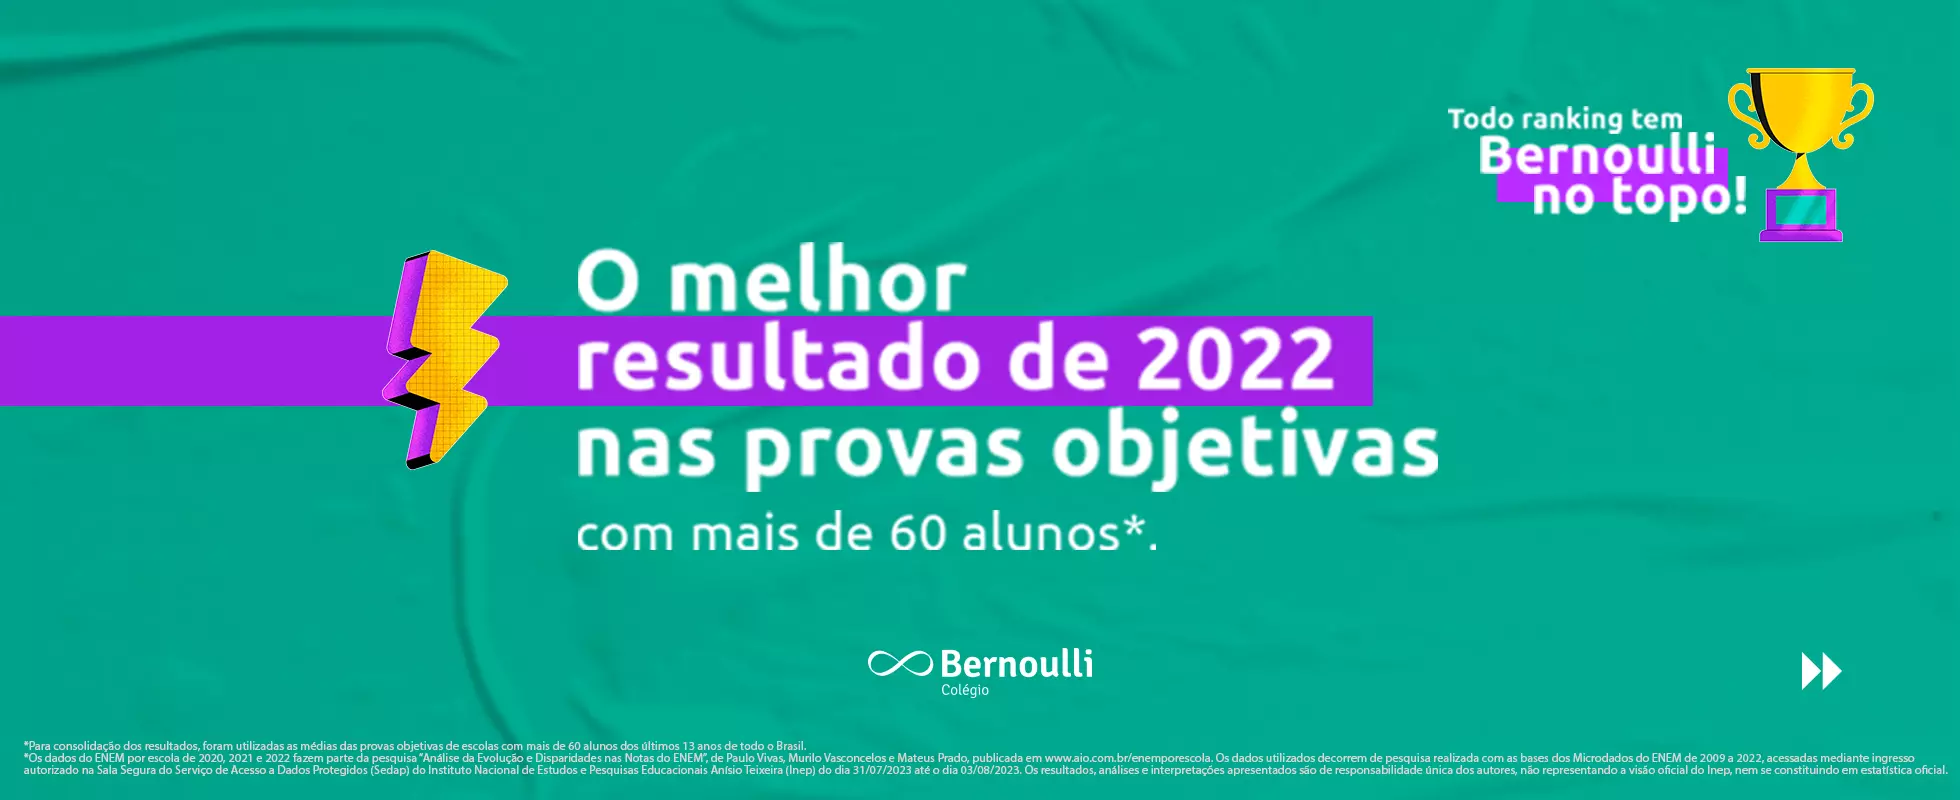 Colégio Bernoulli é o melhor resultado nas provas objetivas de 2022 no Enem